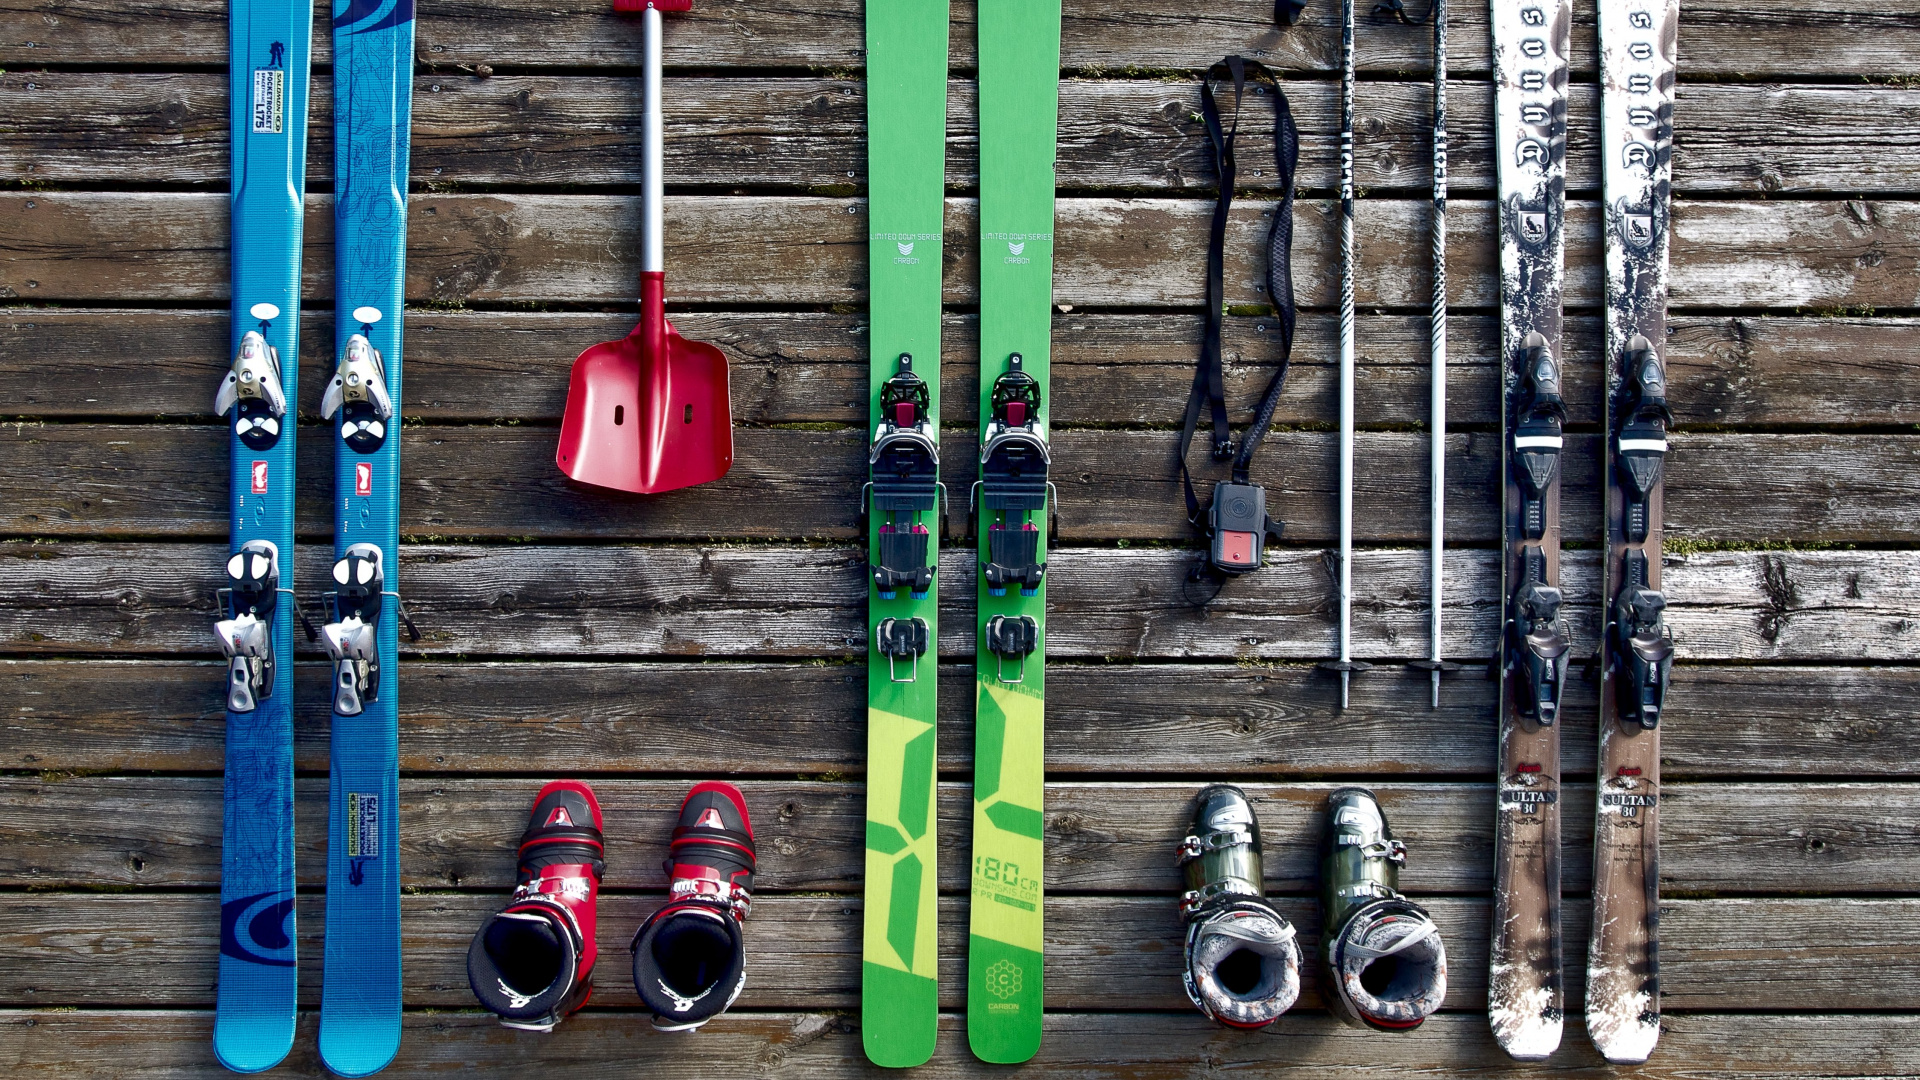 滑雪板, 滑板滑雪, 色彩, 木, 艺术 壁纸 1920x1080 允许